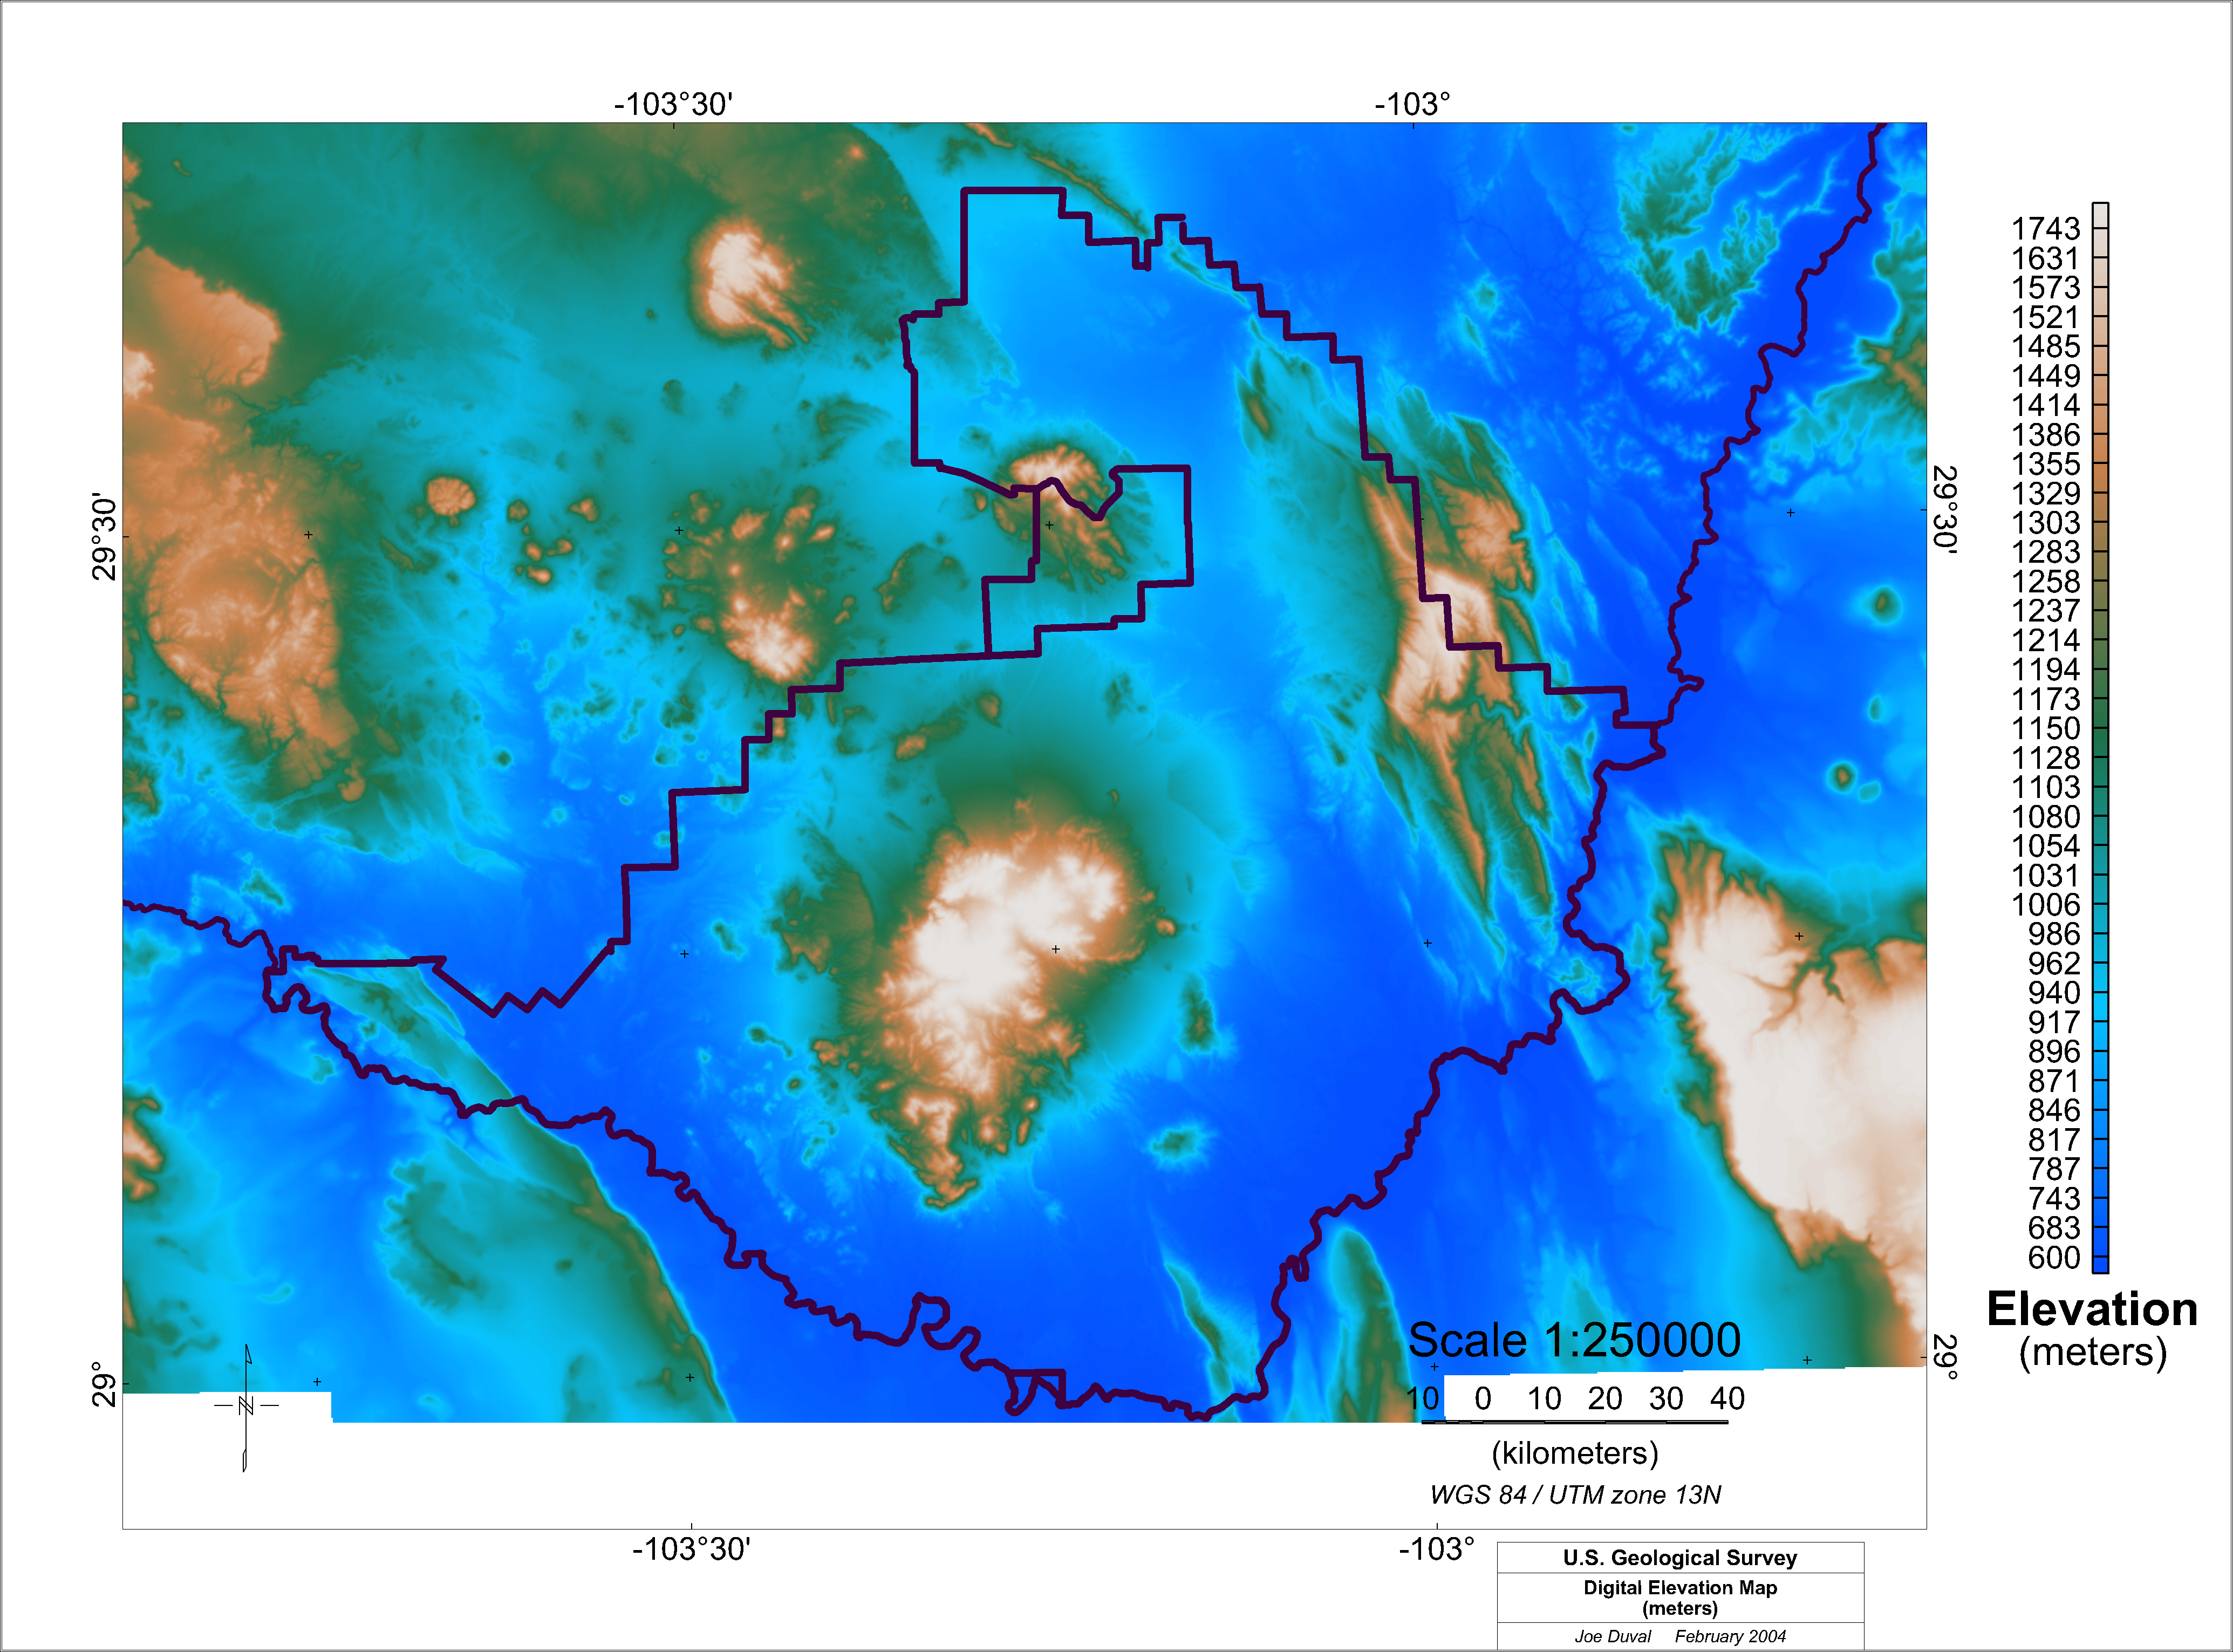 Image of digital elevation data.